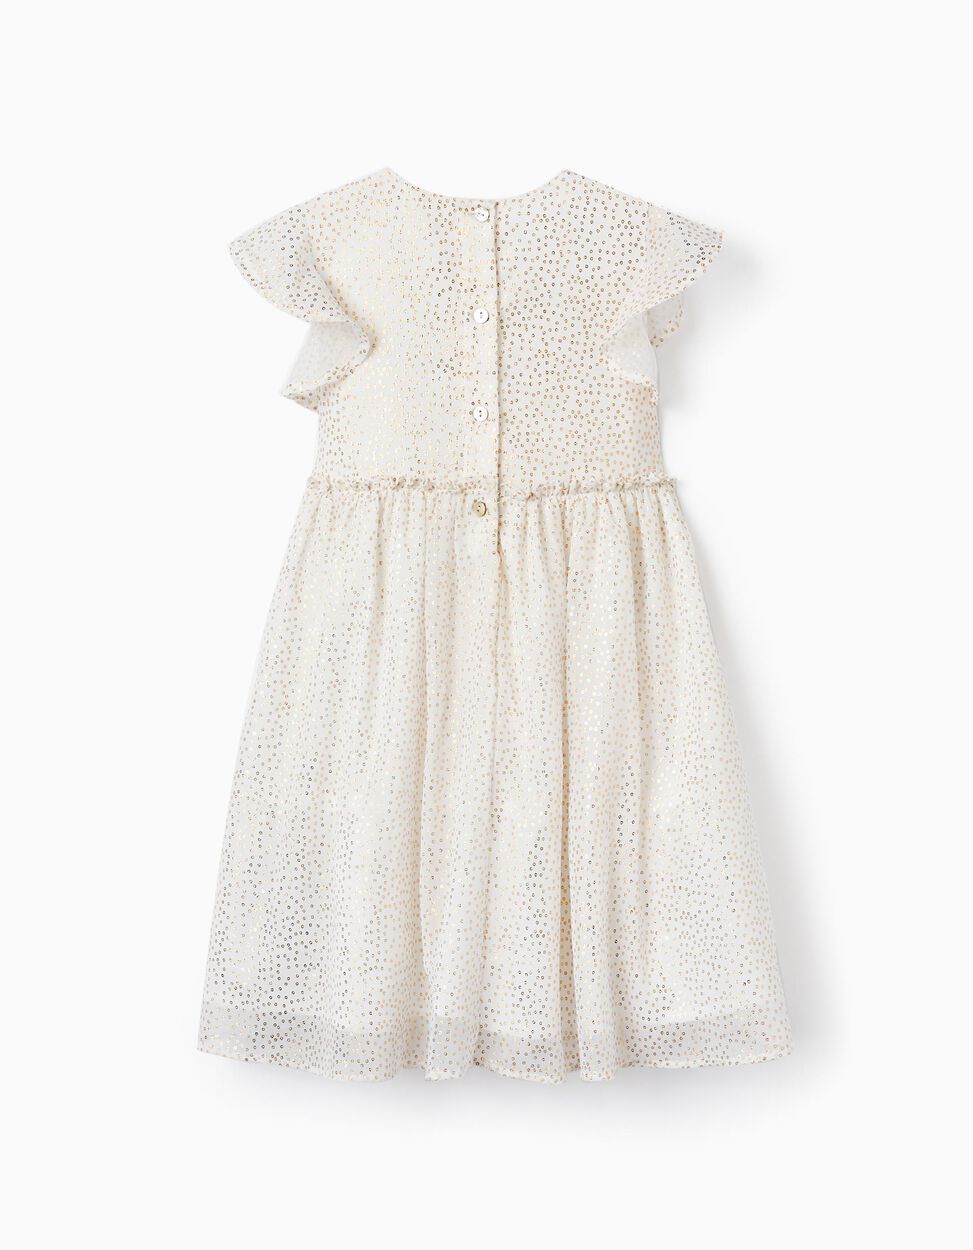 Buy Online Ceremony Dress for Girls, White/Gold